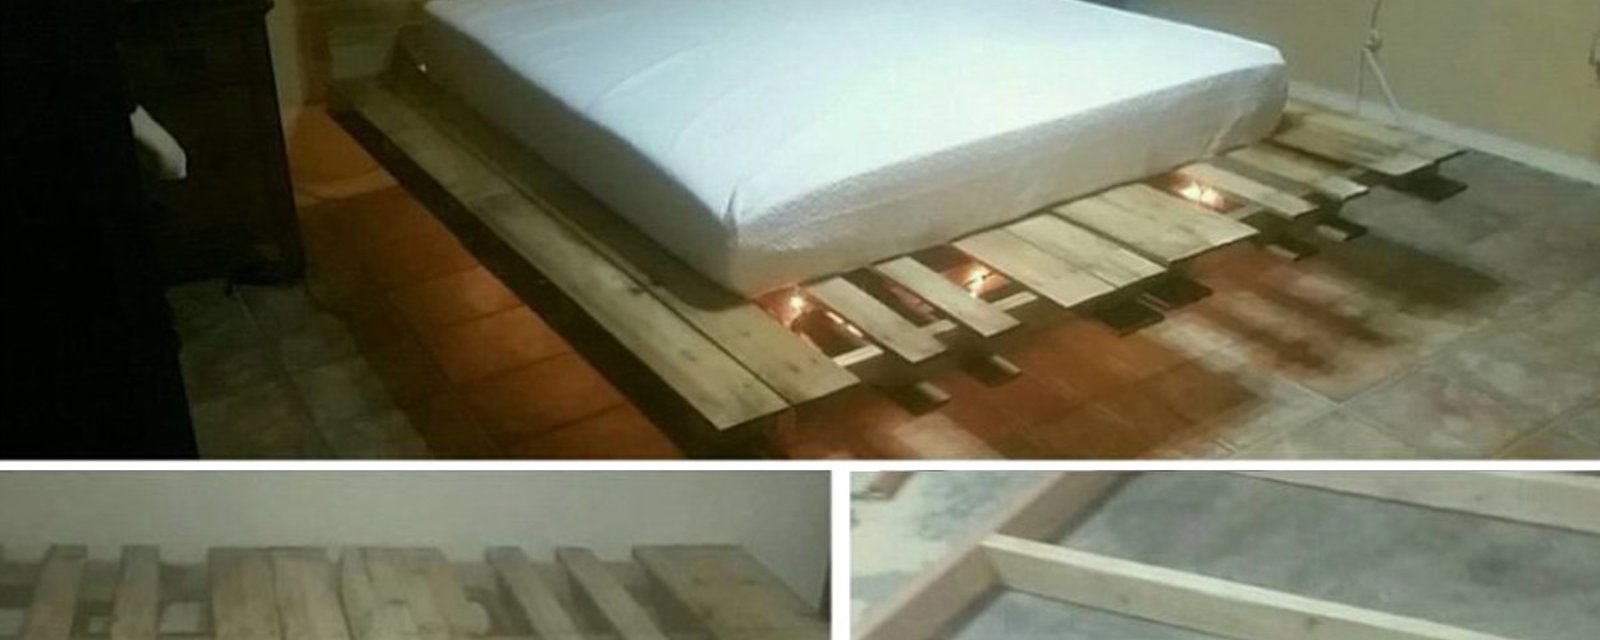 Besoin d'un lit mais vous n'avez pas de budget? Voici 14 façons de fabriquer une base de lit avec des palettes de bois! 